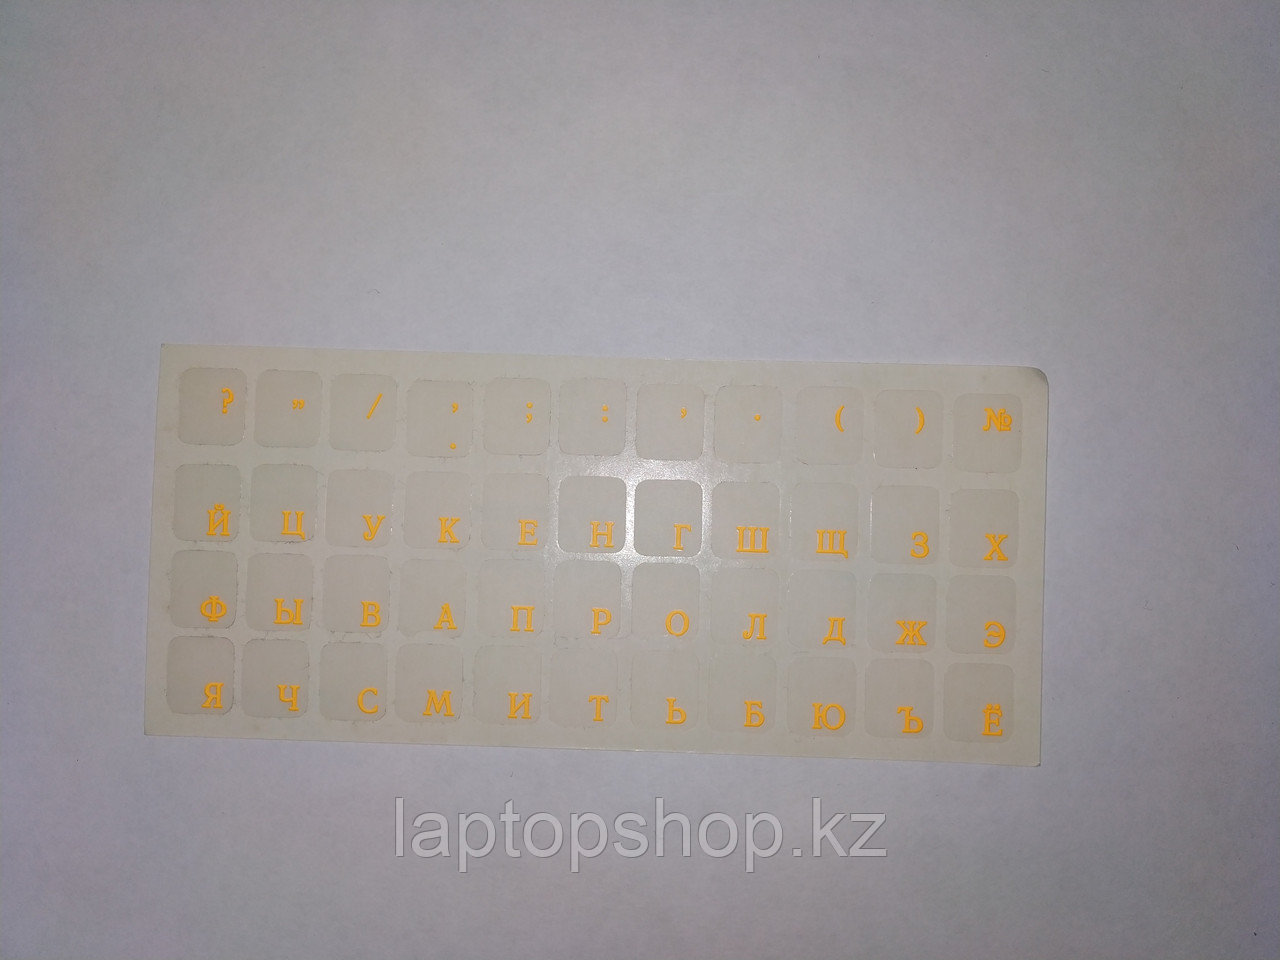 Наклейки на клавиатуру не стираемые, прозрачные, люминисцентные (краска ПОД ПЛЕНКОЙ) - ярко-оранжевые